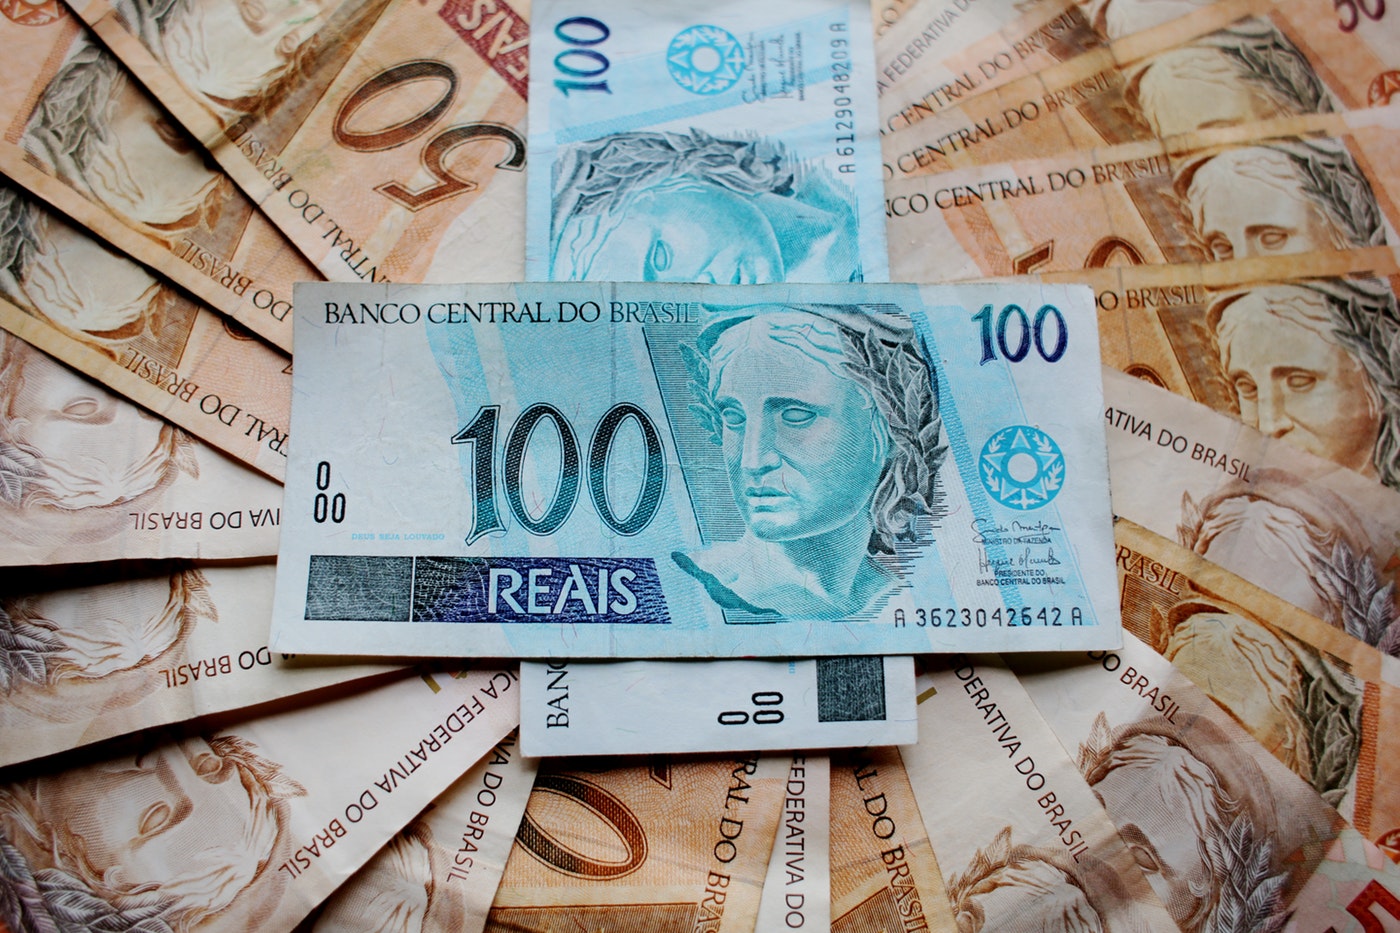 Somando Fundo Partidário e o fundo eleitoral, partidos terão R$ 2,5 bilhões em dinheiro público para gastar nas eleições de 2018. Foto: Pixabay/Pexels.